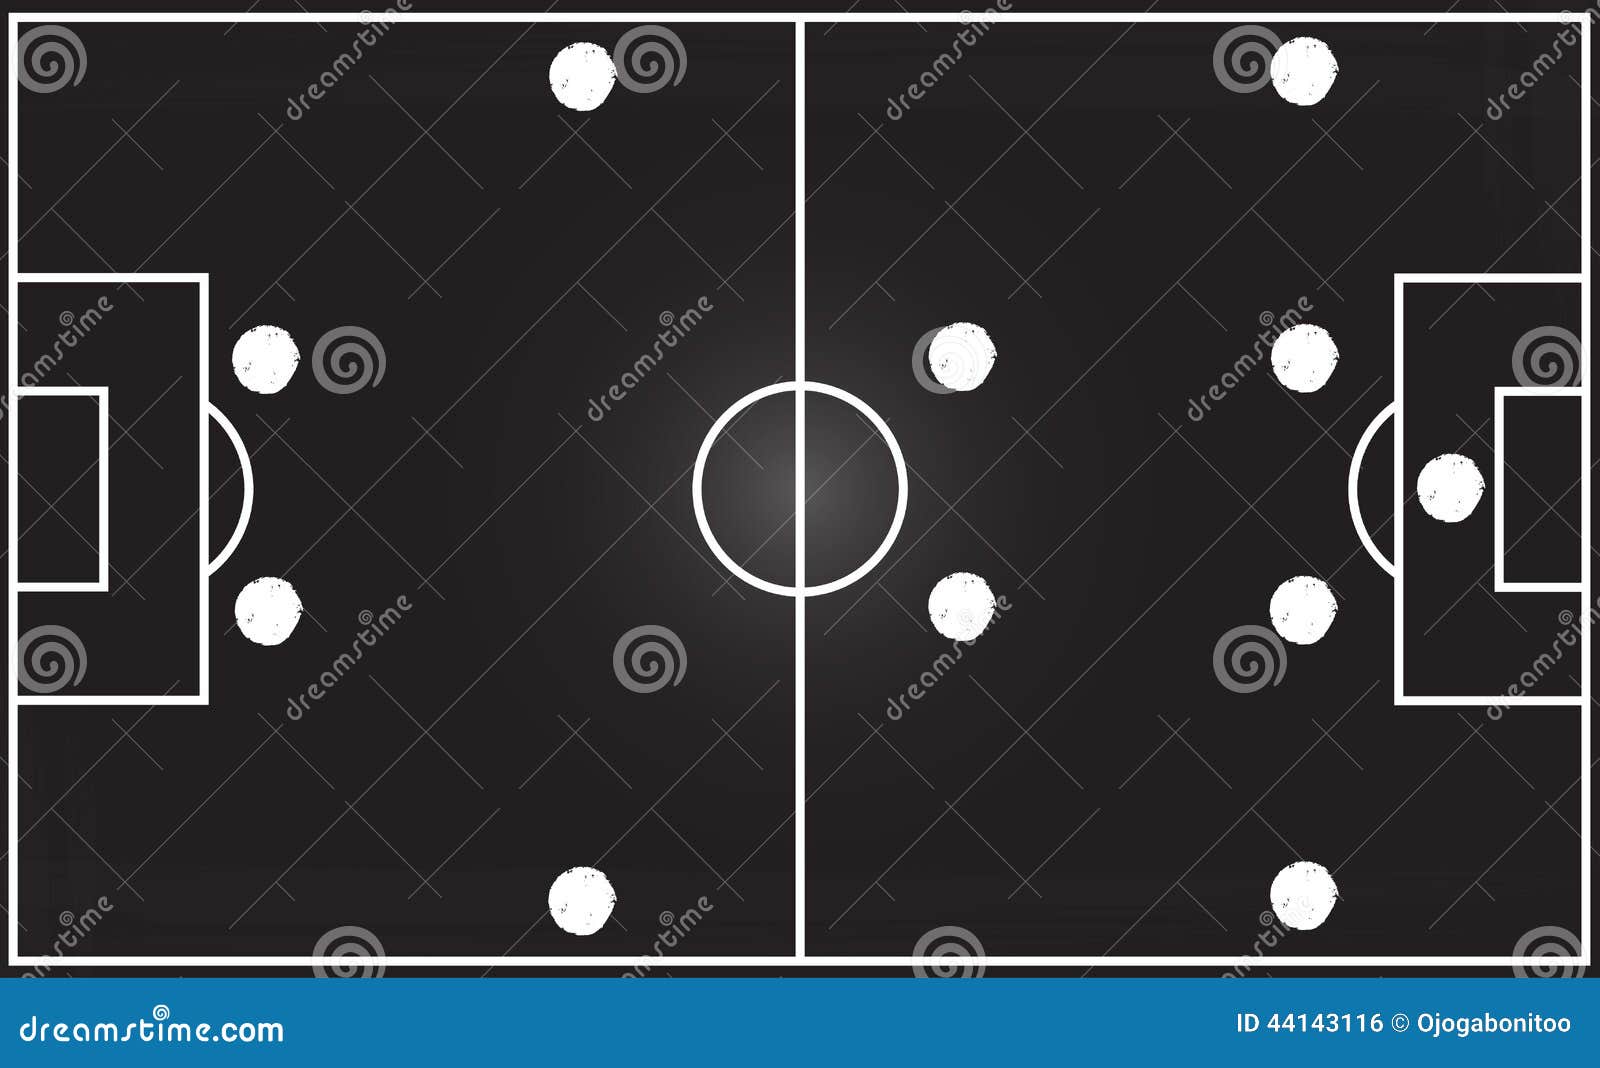 formações de futebol, esquema de formação de jogadores de futebol 4-4-2 em  uma ilustração de campo de futebol. 8415268 Vetor no Vecteezy